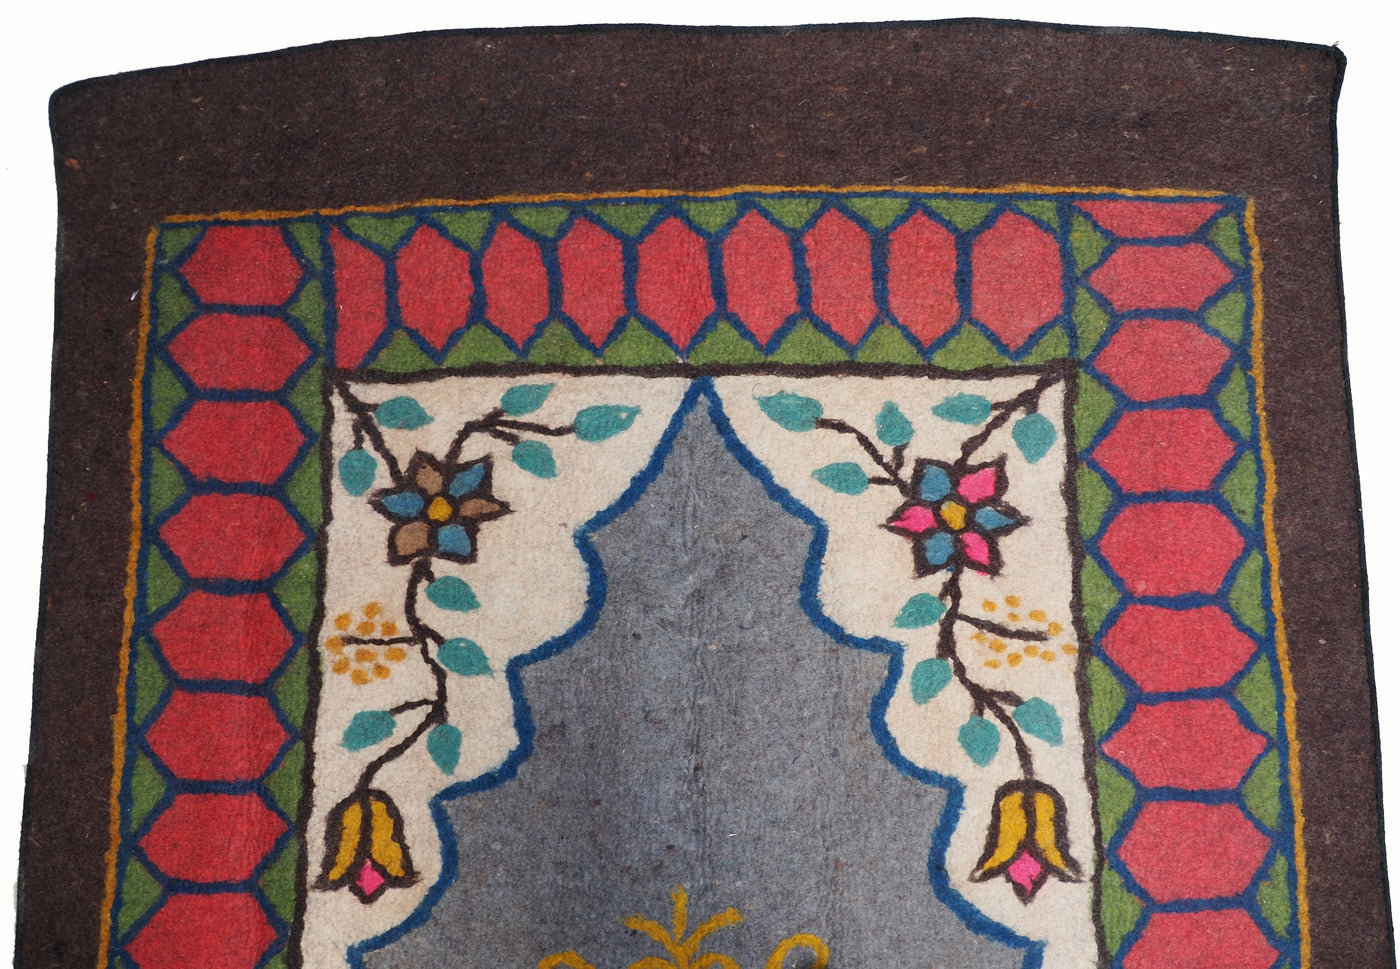 331x200 cm orient handgewebte Teppich Nomaden handgearbeitete Turkmenische nomanden Jurten Filzteppich Filz koshma Afghanistan shyrdak N706  Orientsbazar   